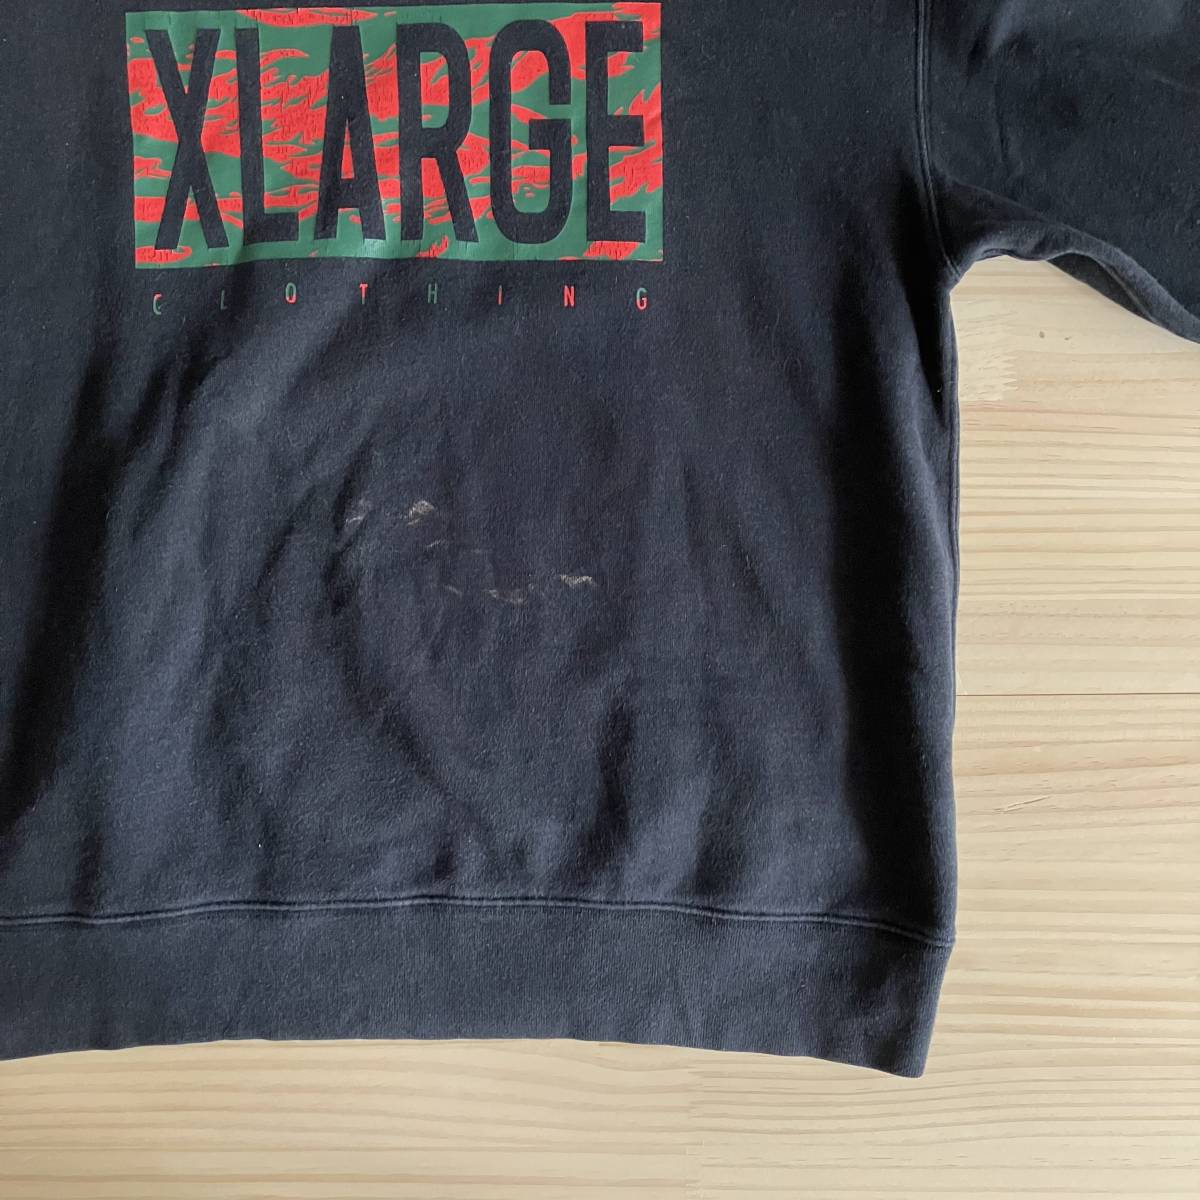 # X-LARGE XLARGE XLarge # sweat black black # Logo camouflage # M # /